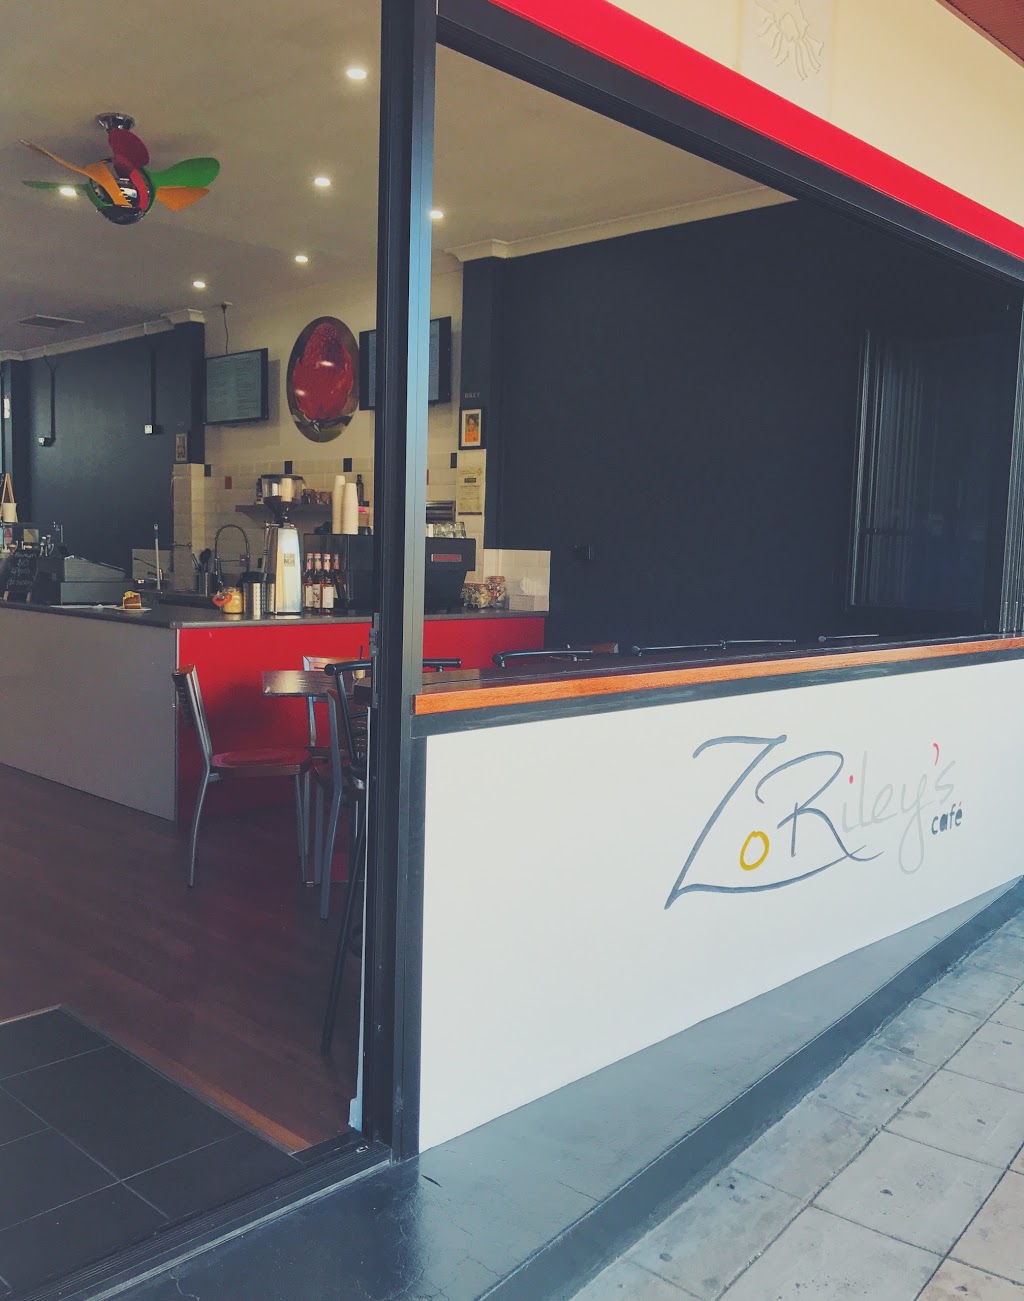 ZoRileys Cafe | 43 Station St, Waratah NSW 2298, Australia